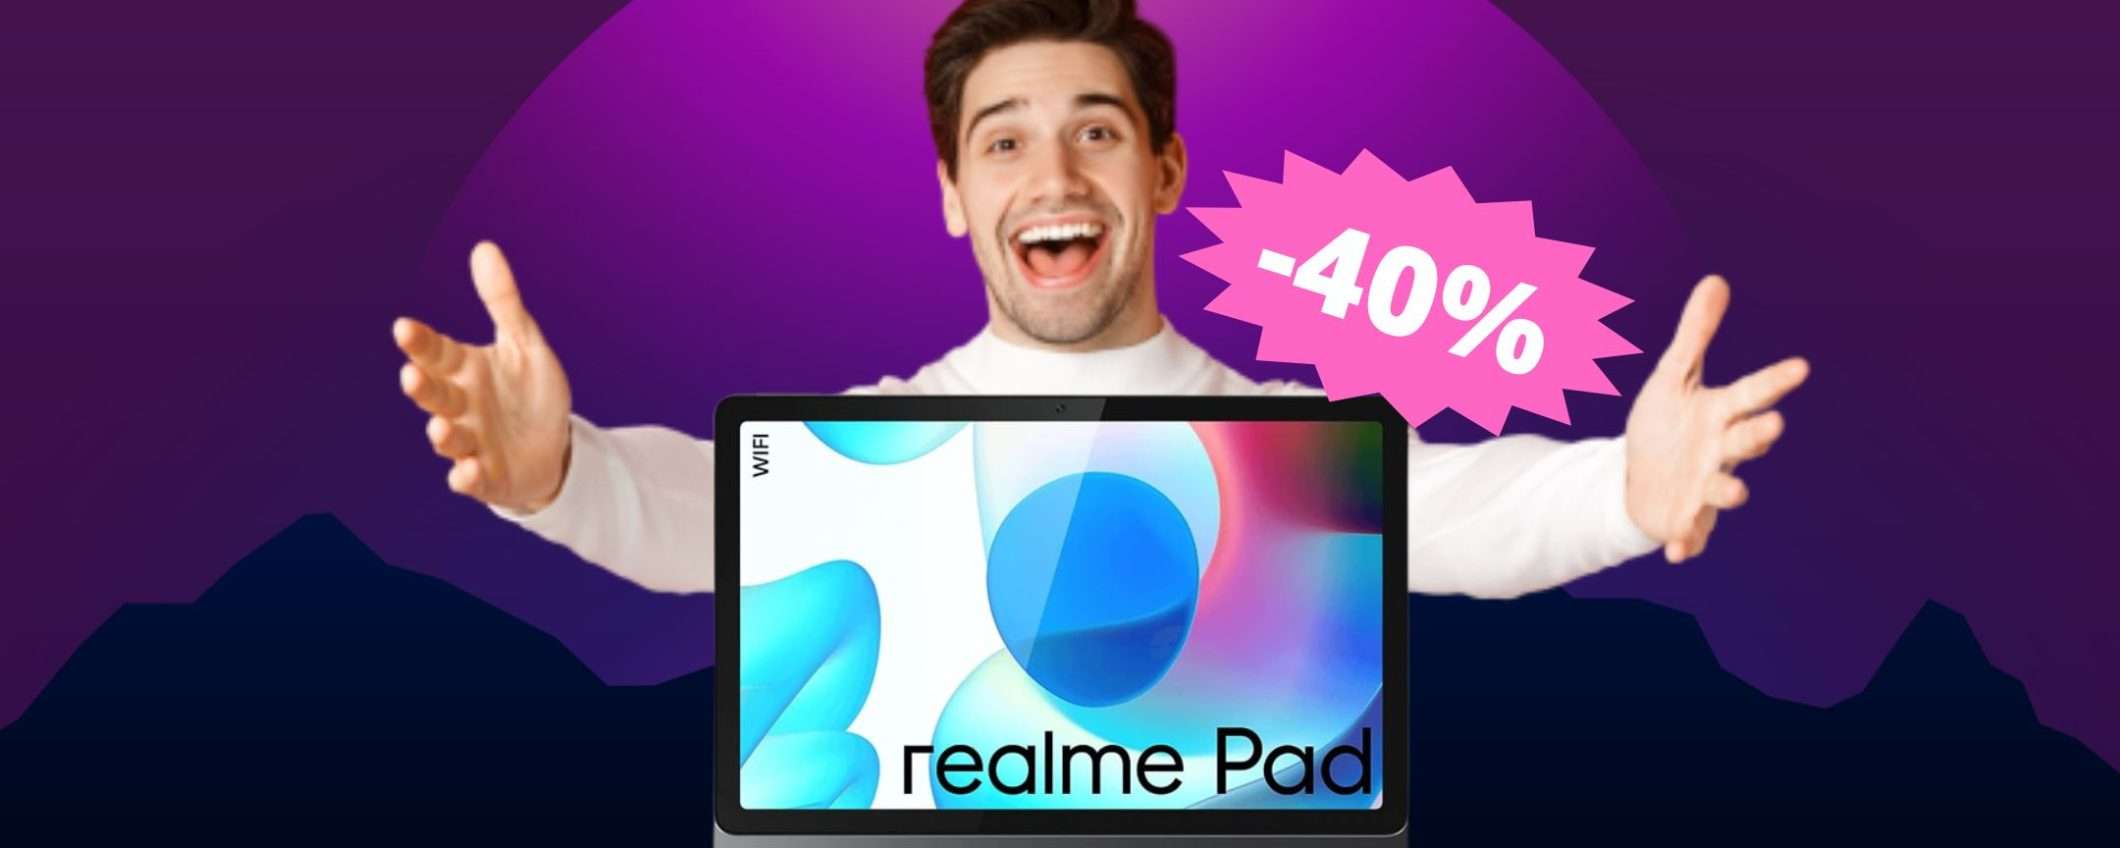 Tablet Realme Pad: INCREDIBILE sconto del 38% su Amazon